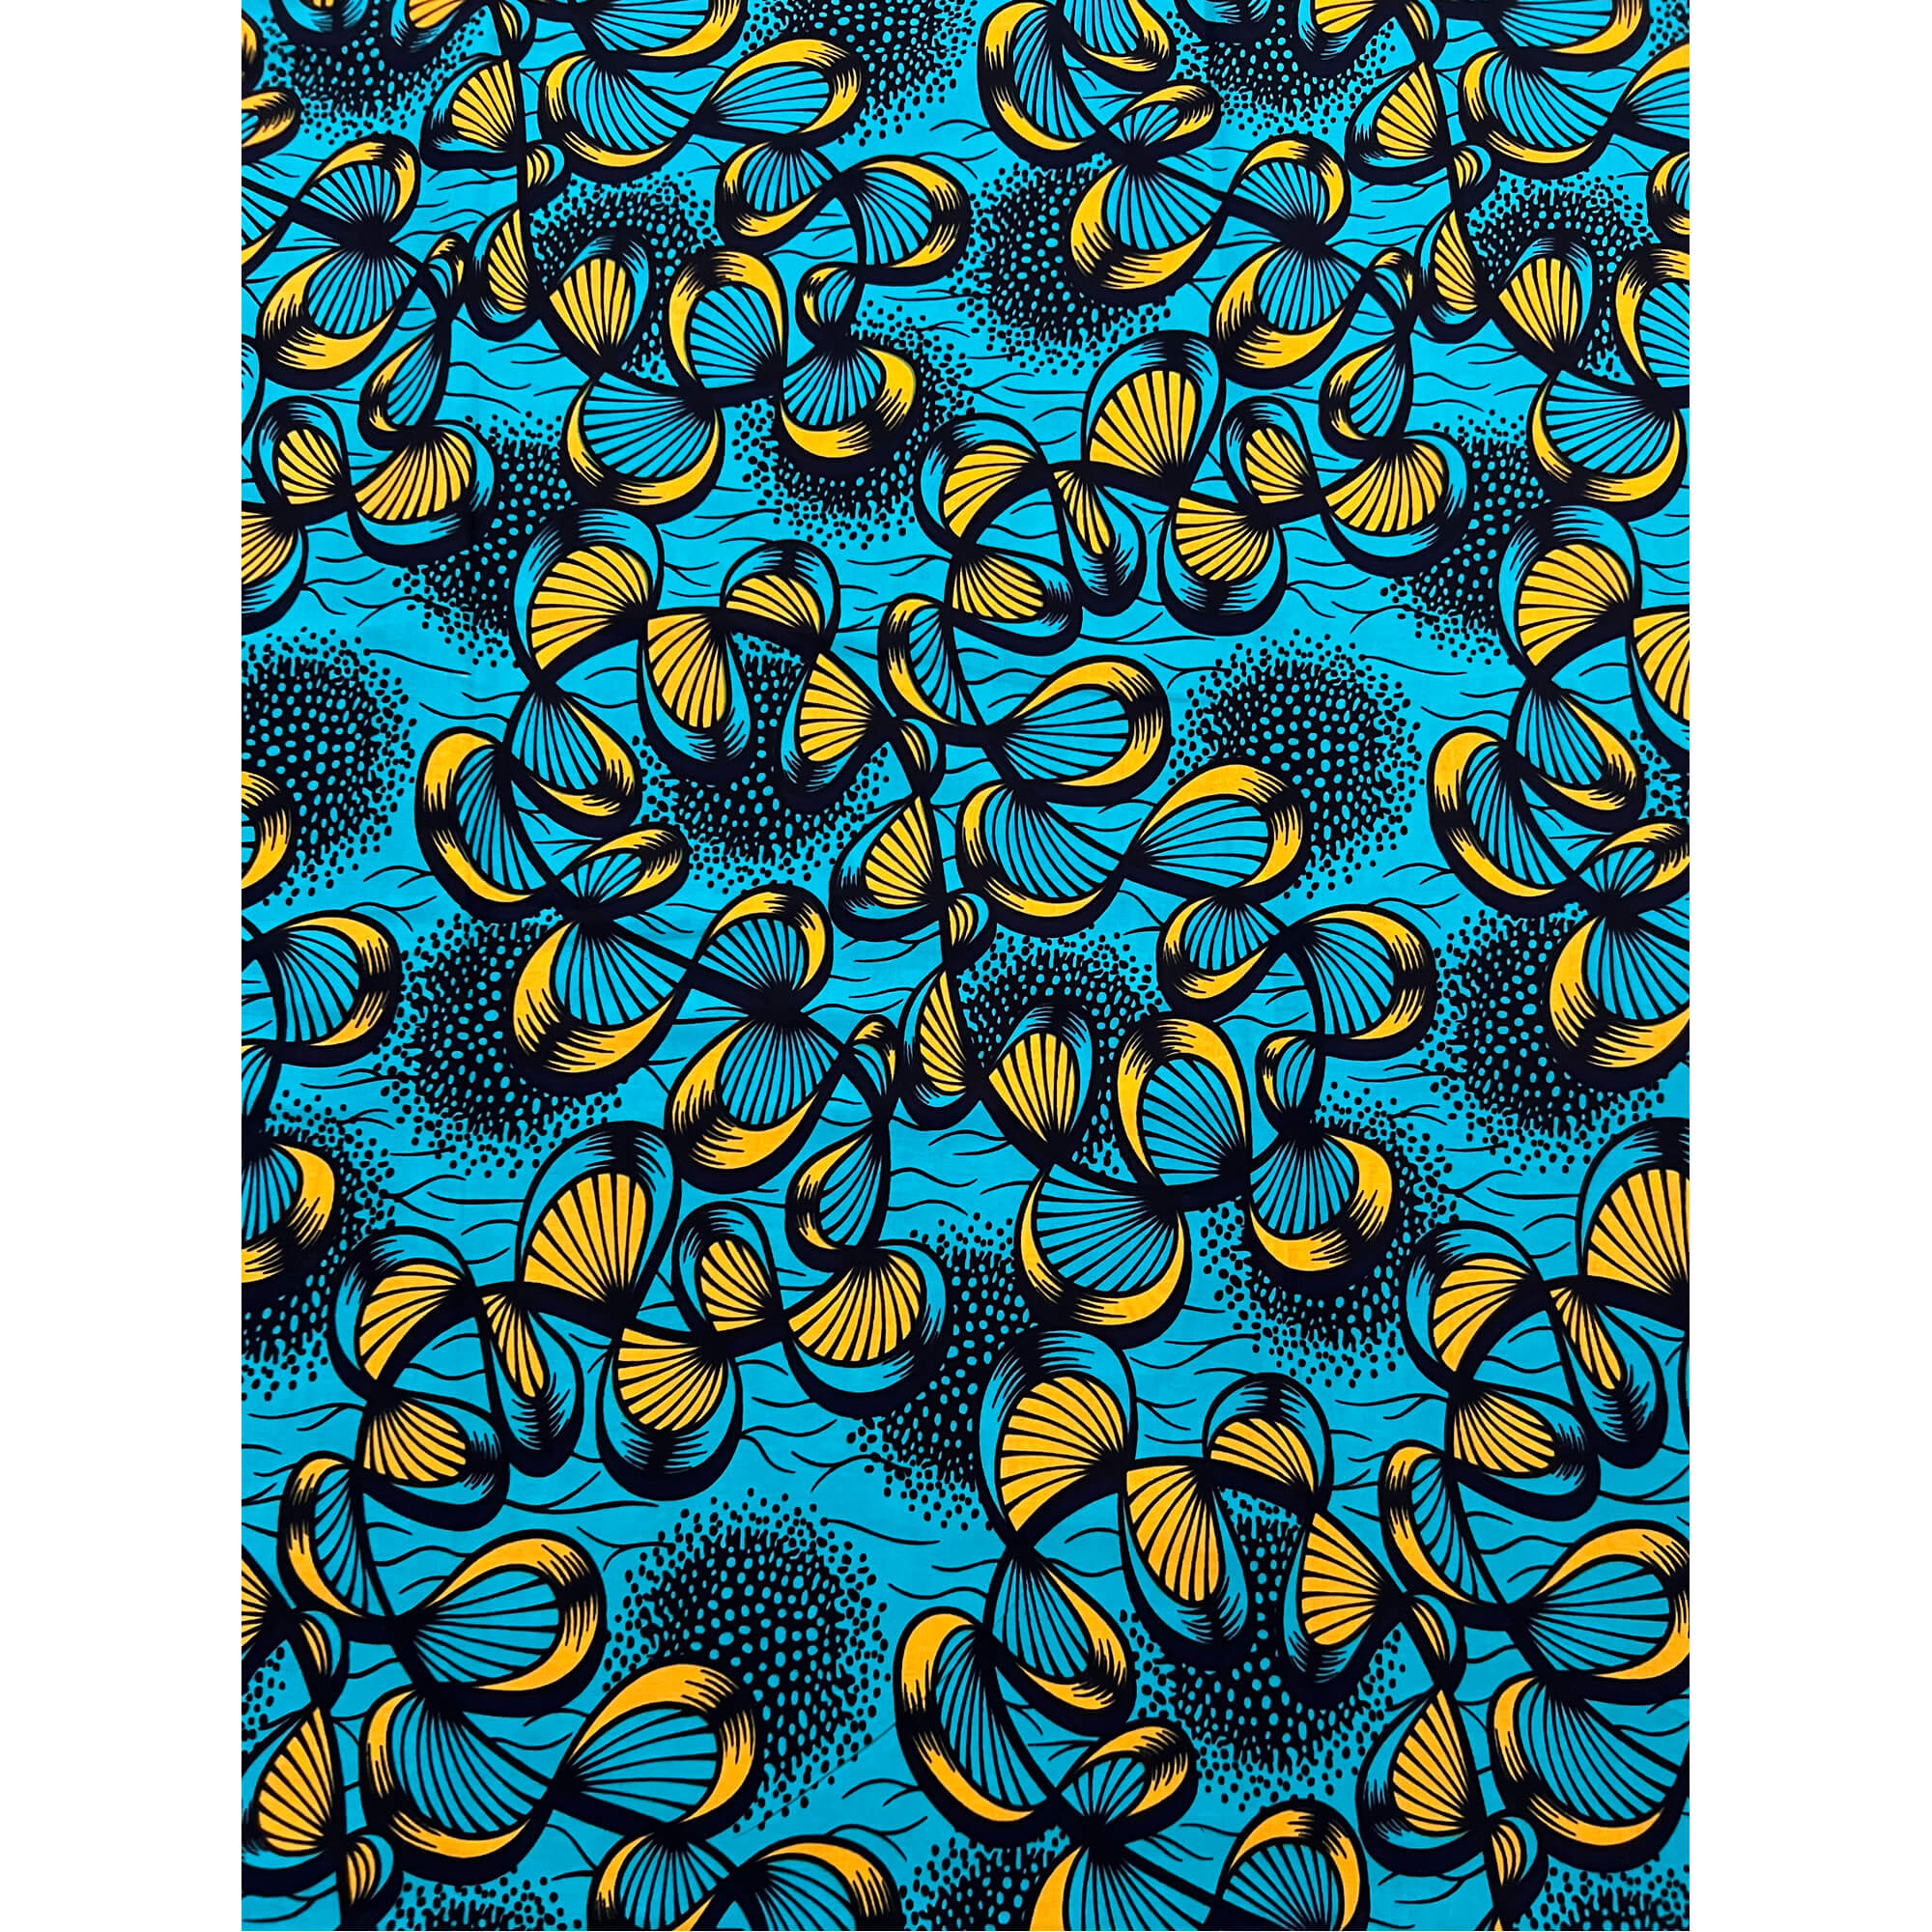 Tissu - Wax 100% coton - Graphiques - Bleu / Jaune / Noir